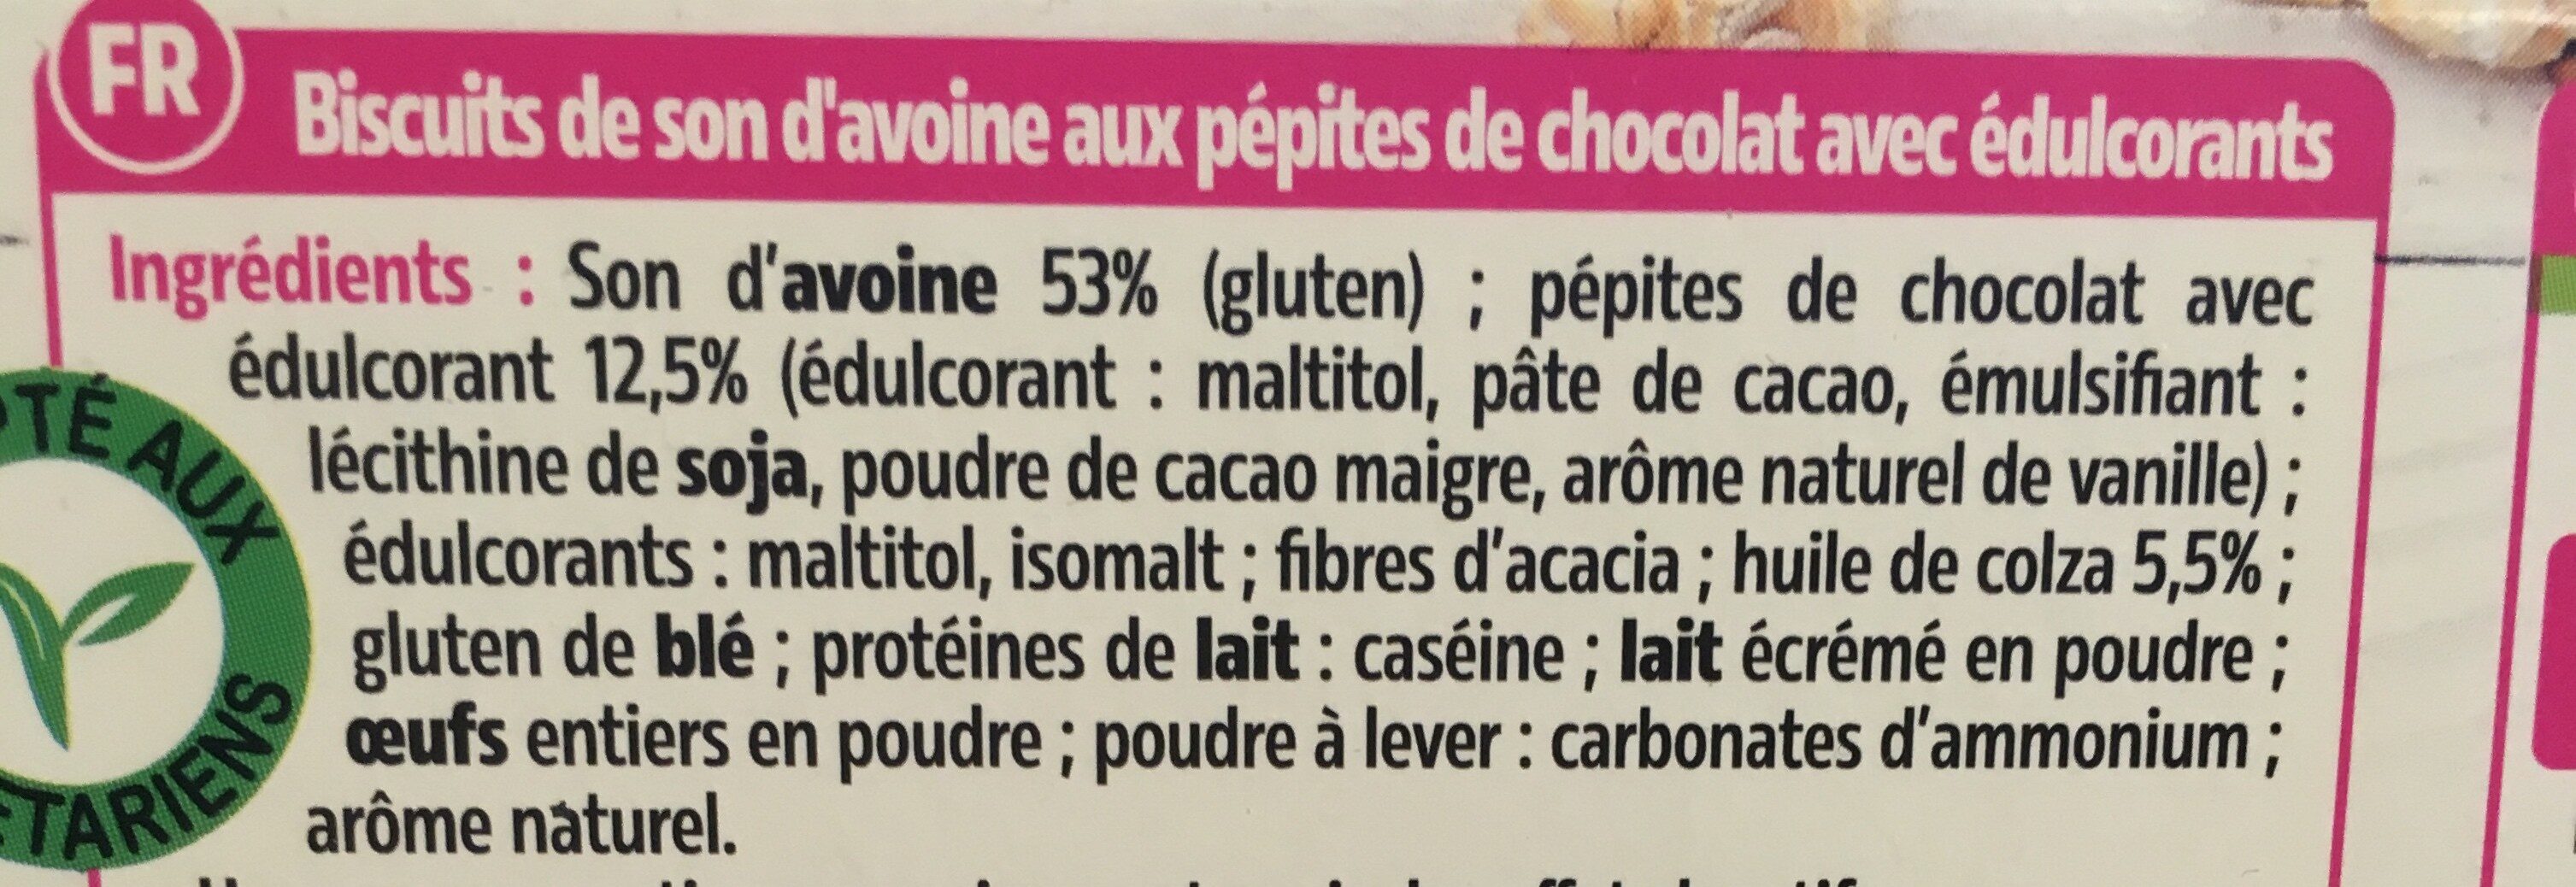 Biscuits aux pépites de chocolat - Ingredients - fr